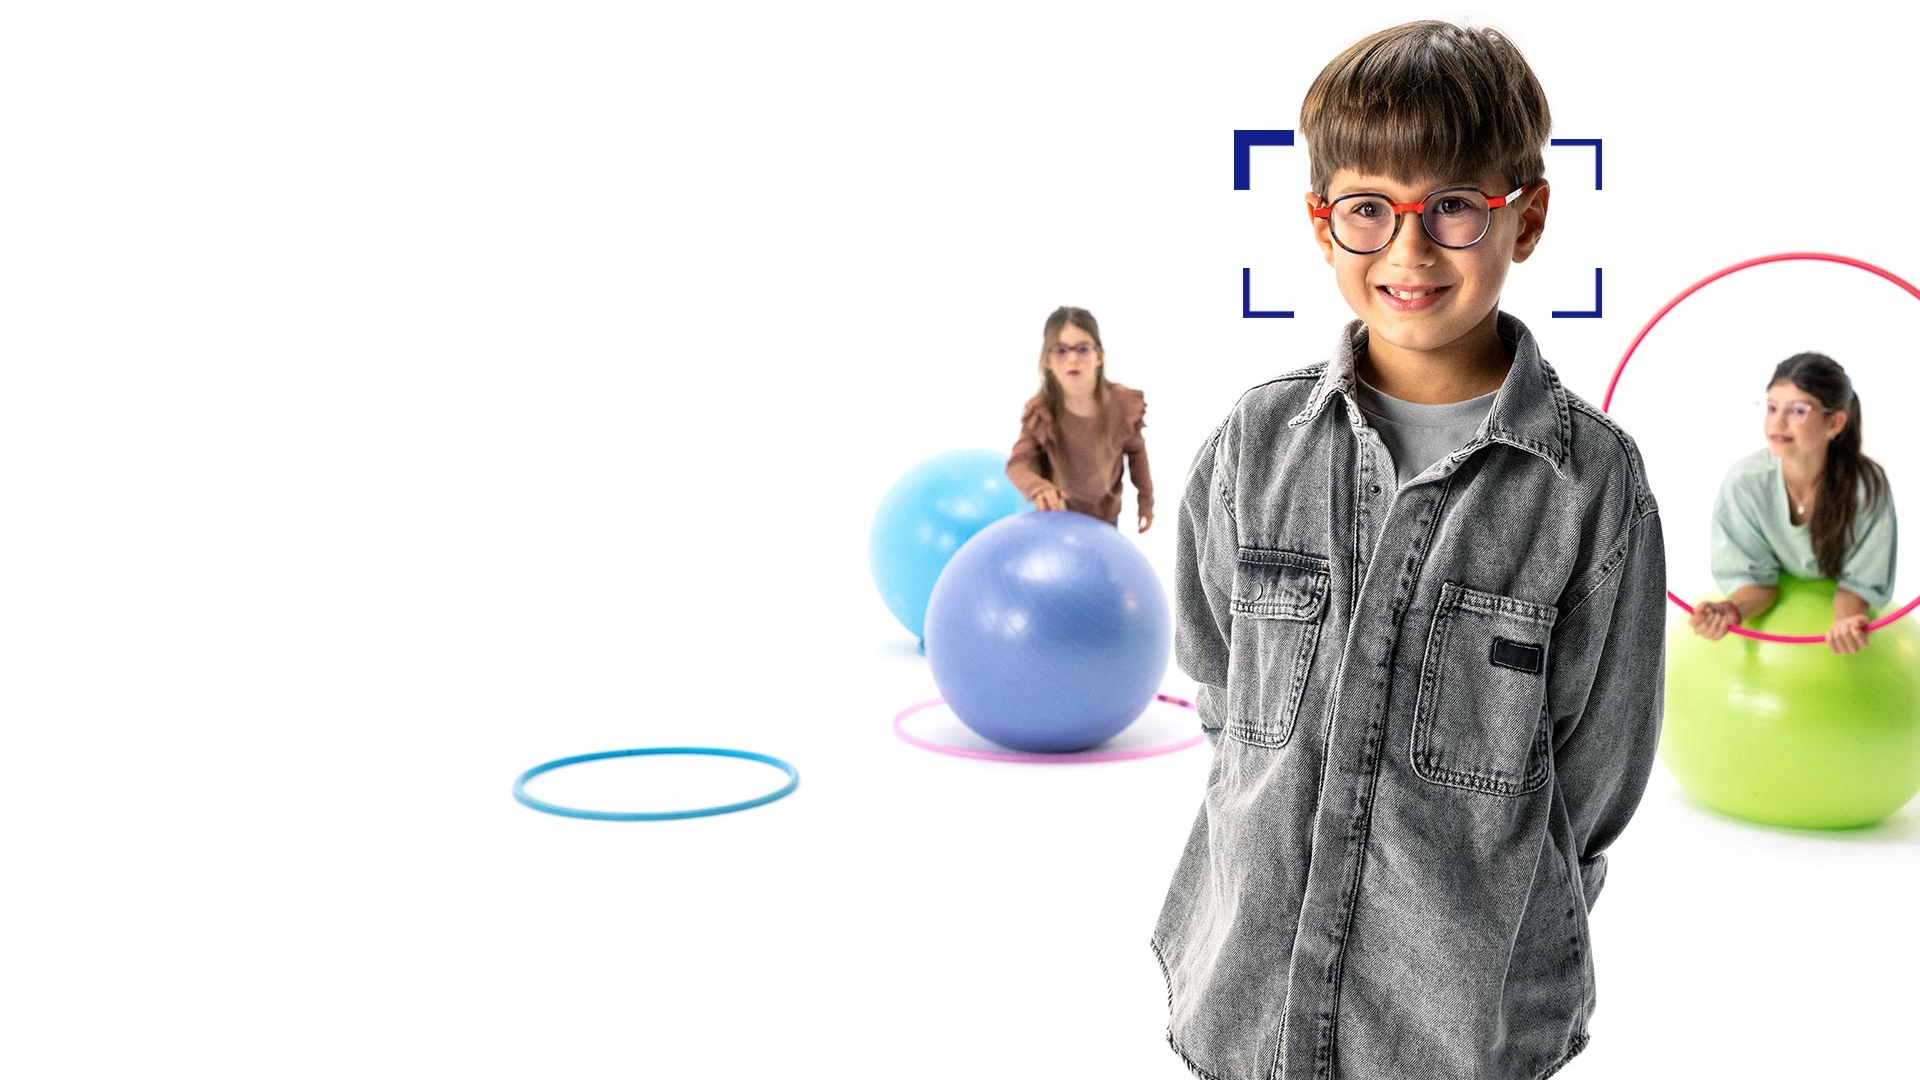 戴圓形眼鏡並使用蔡司 MyoCare 鏡片的棕髮男孩，站在前方對著相機燦笑。背景是兩位配戴蔡司MyoCare鏡片的女孩在玩體操圈和體操球。